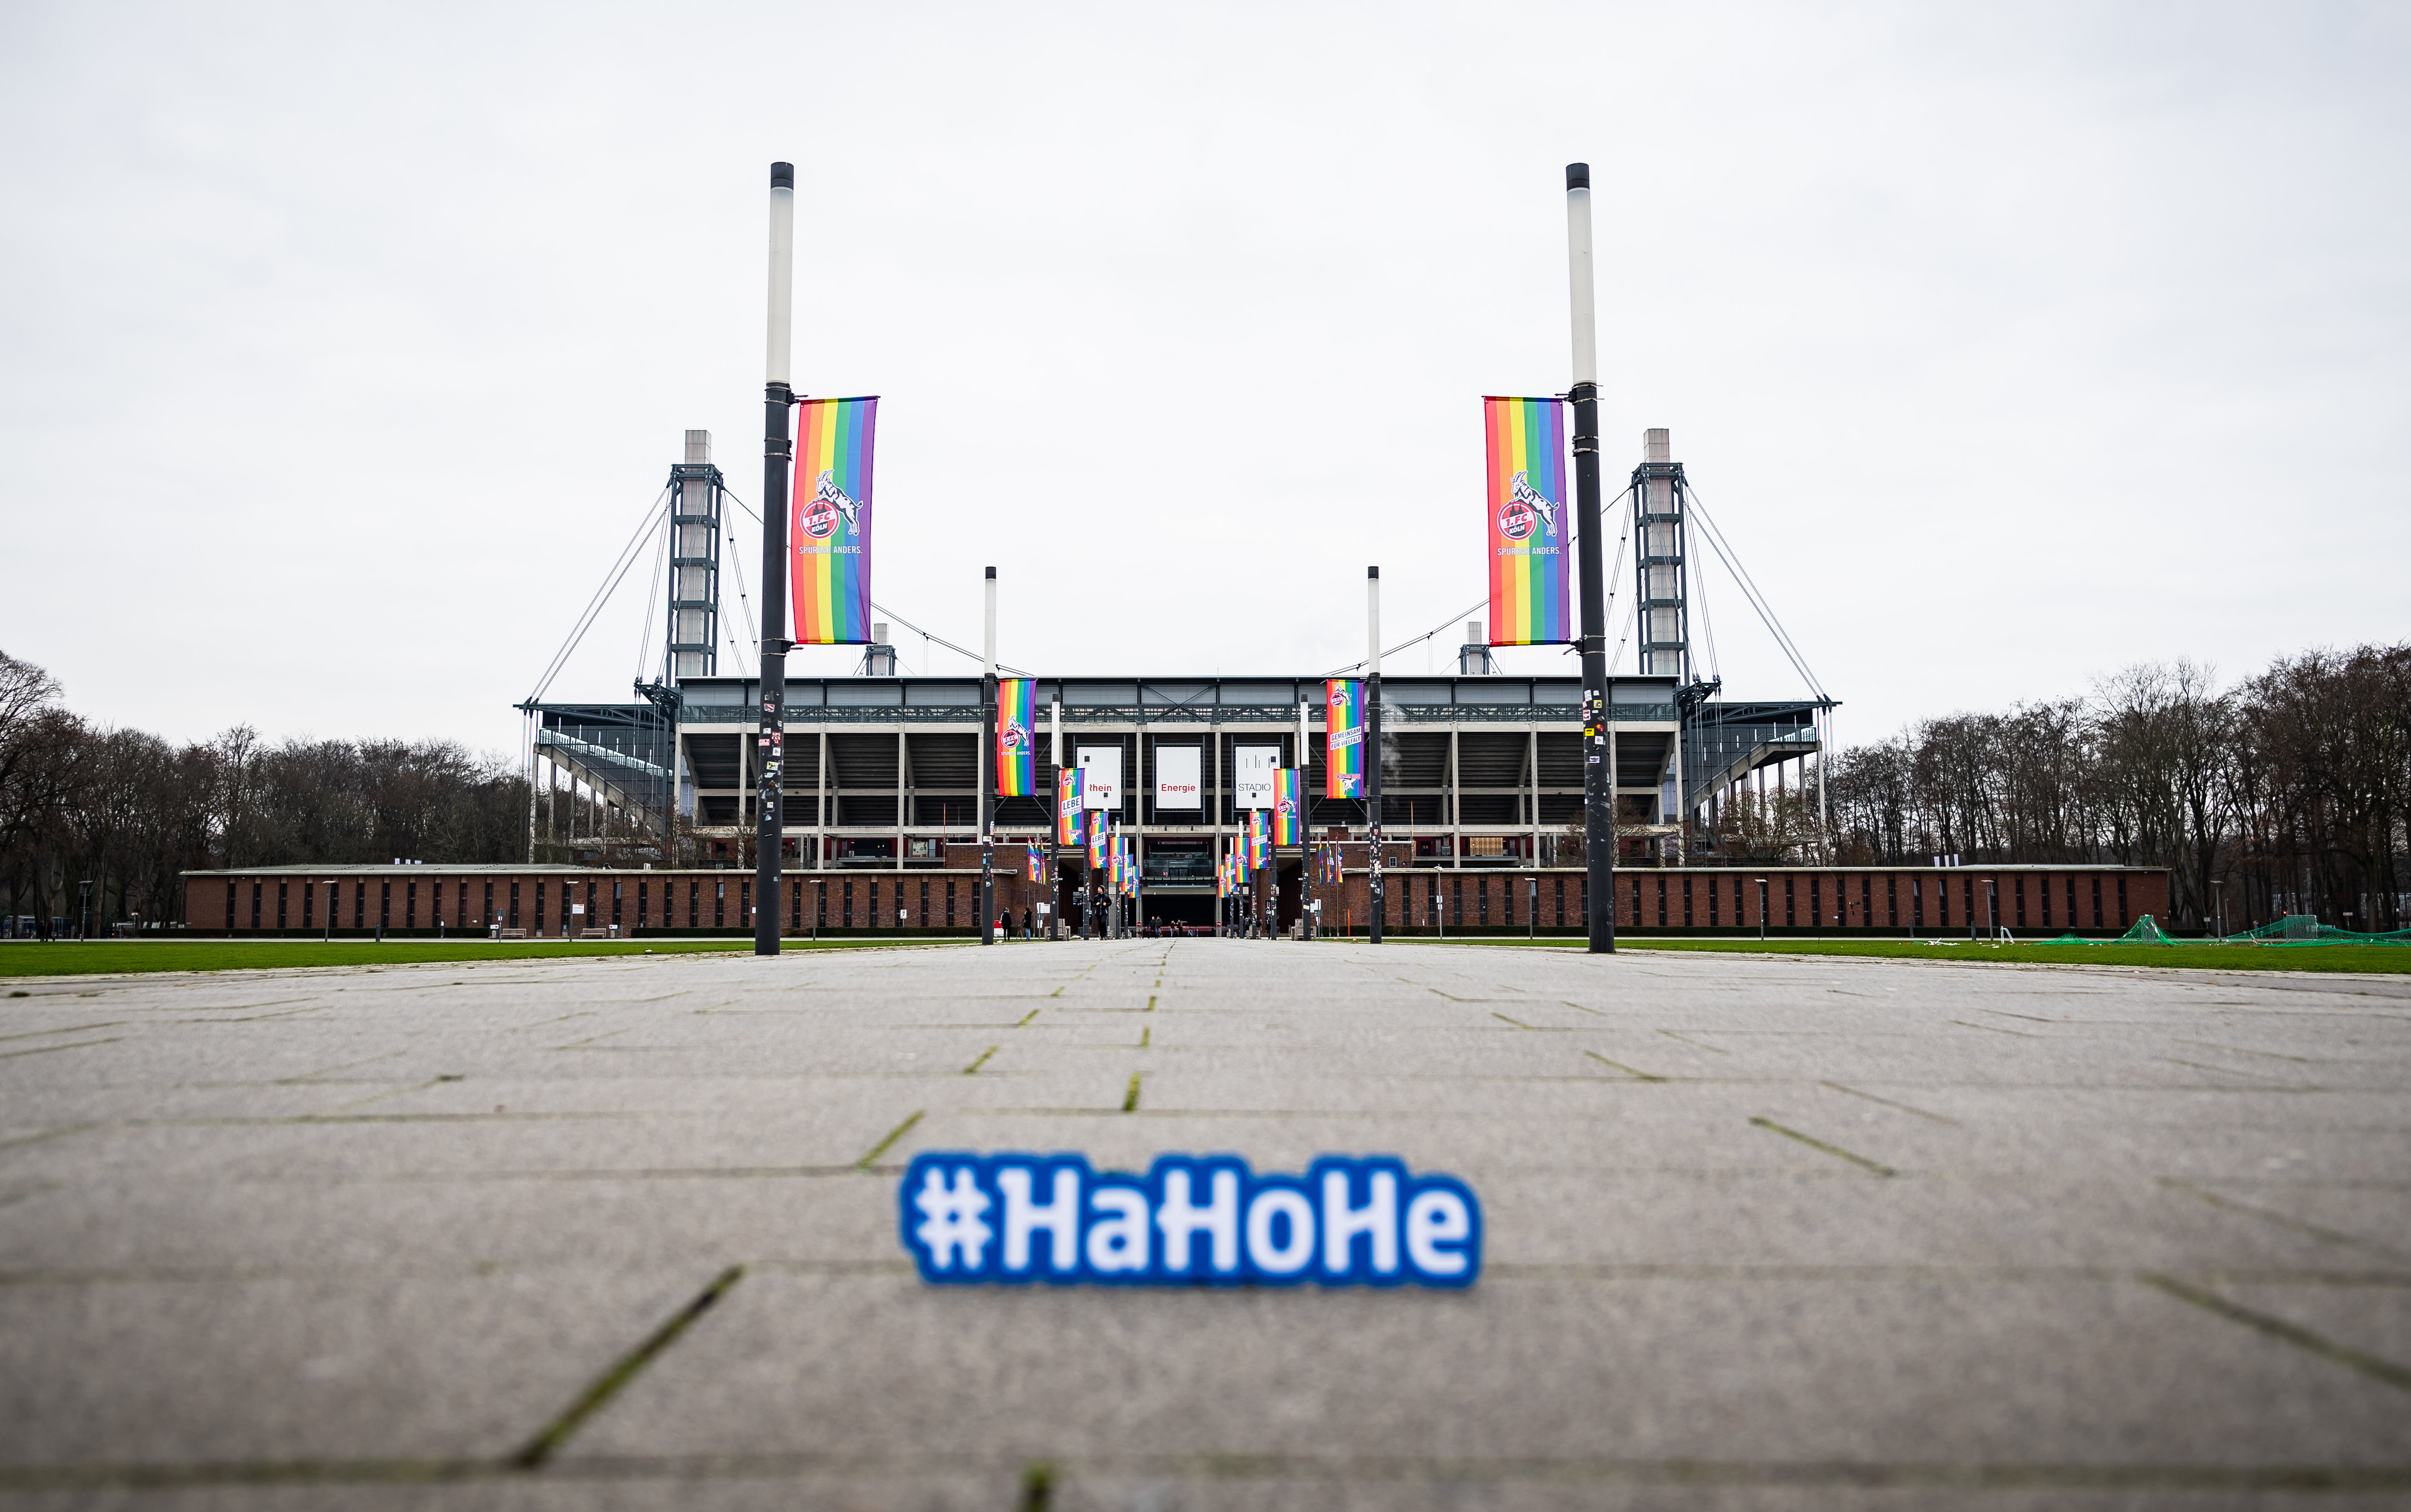 Das Kölner Stadion mit dem HaHoHe-Schild davor.